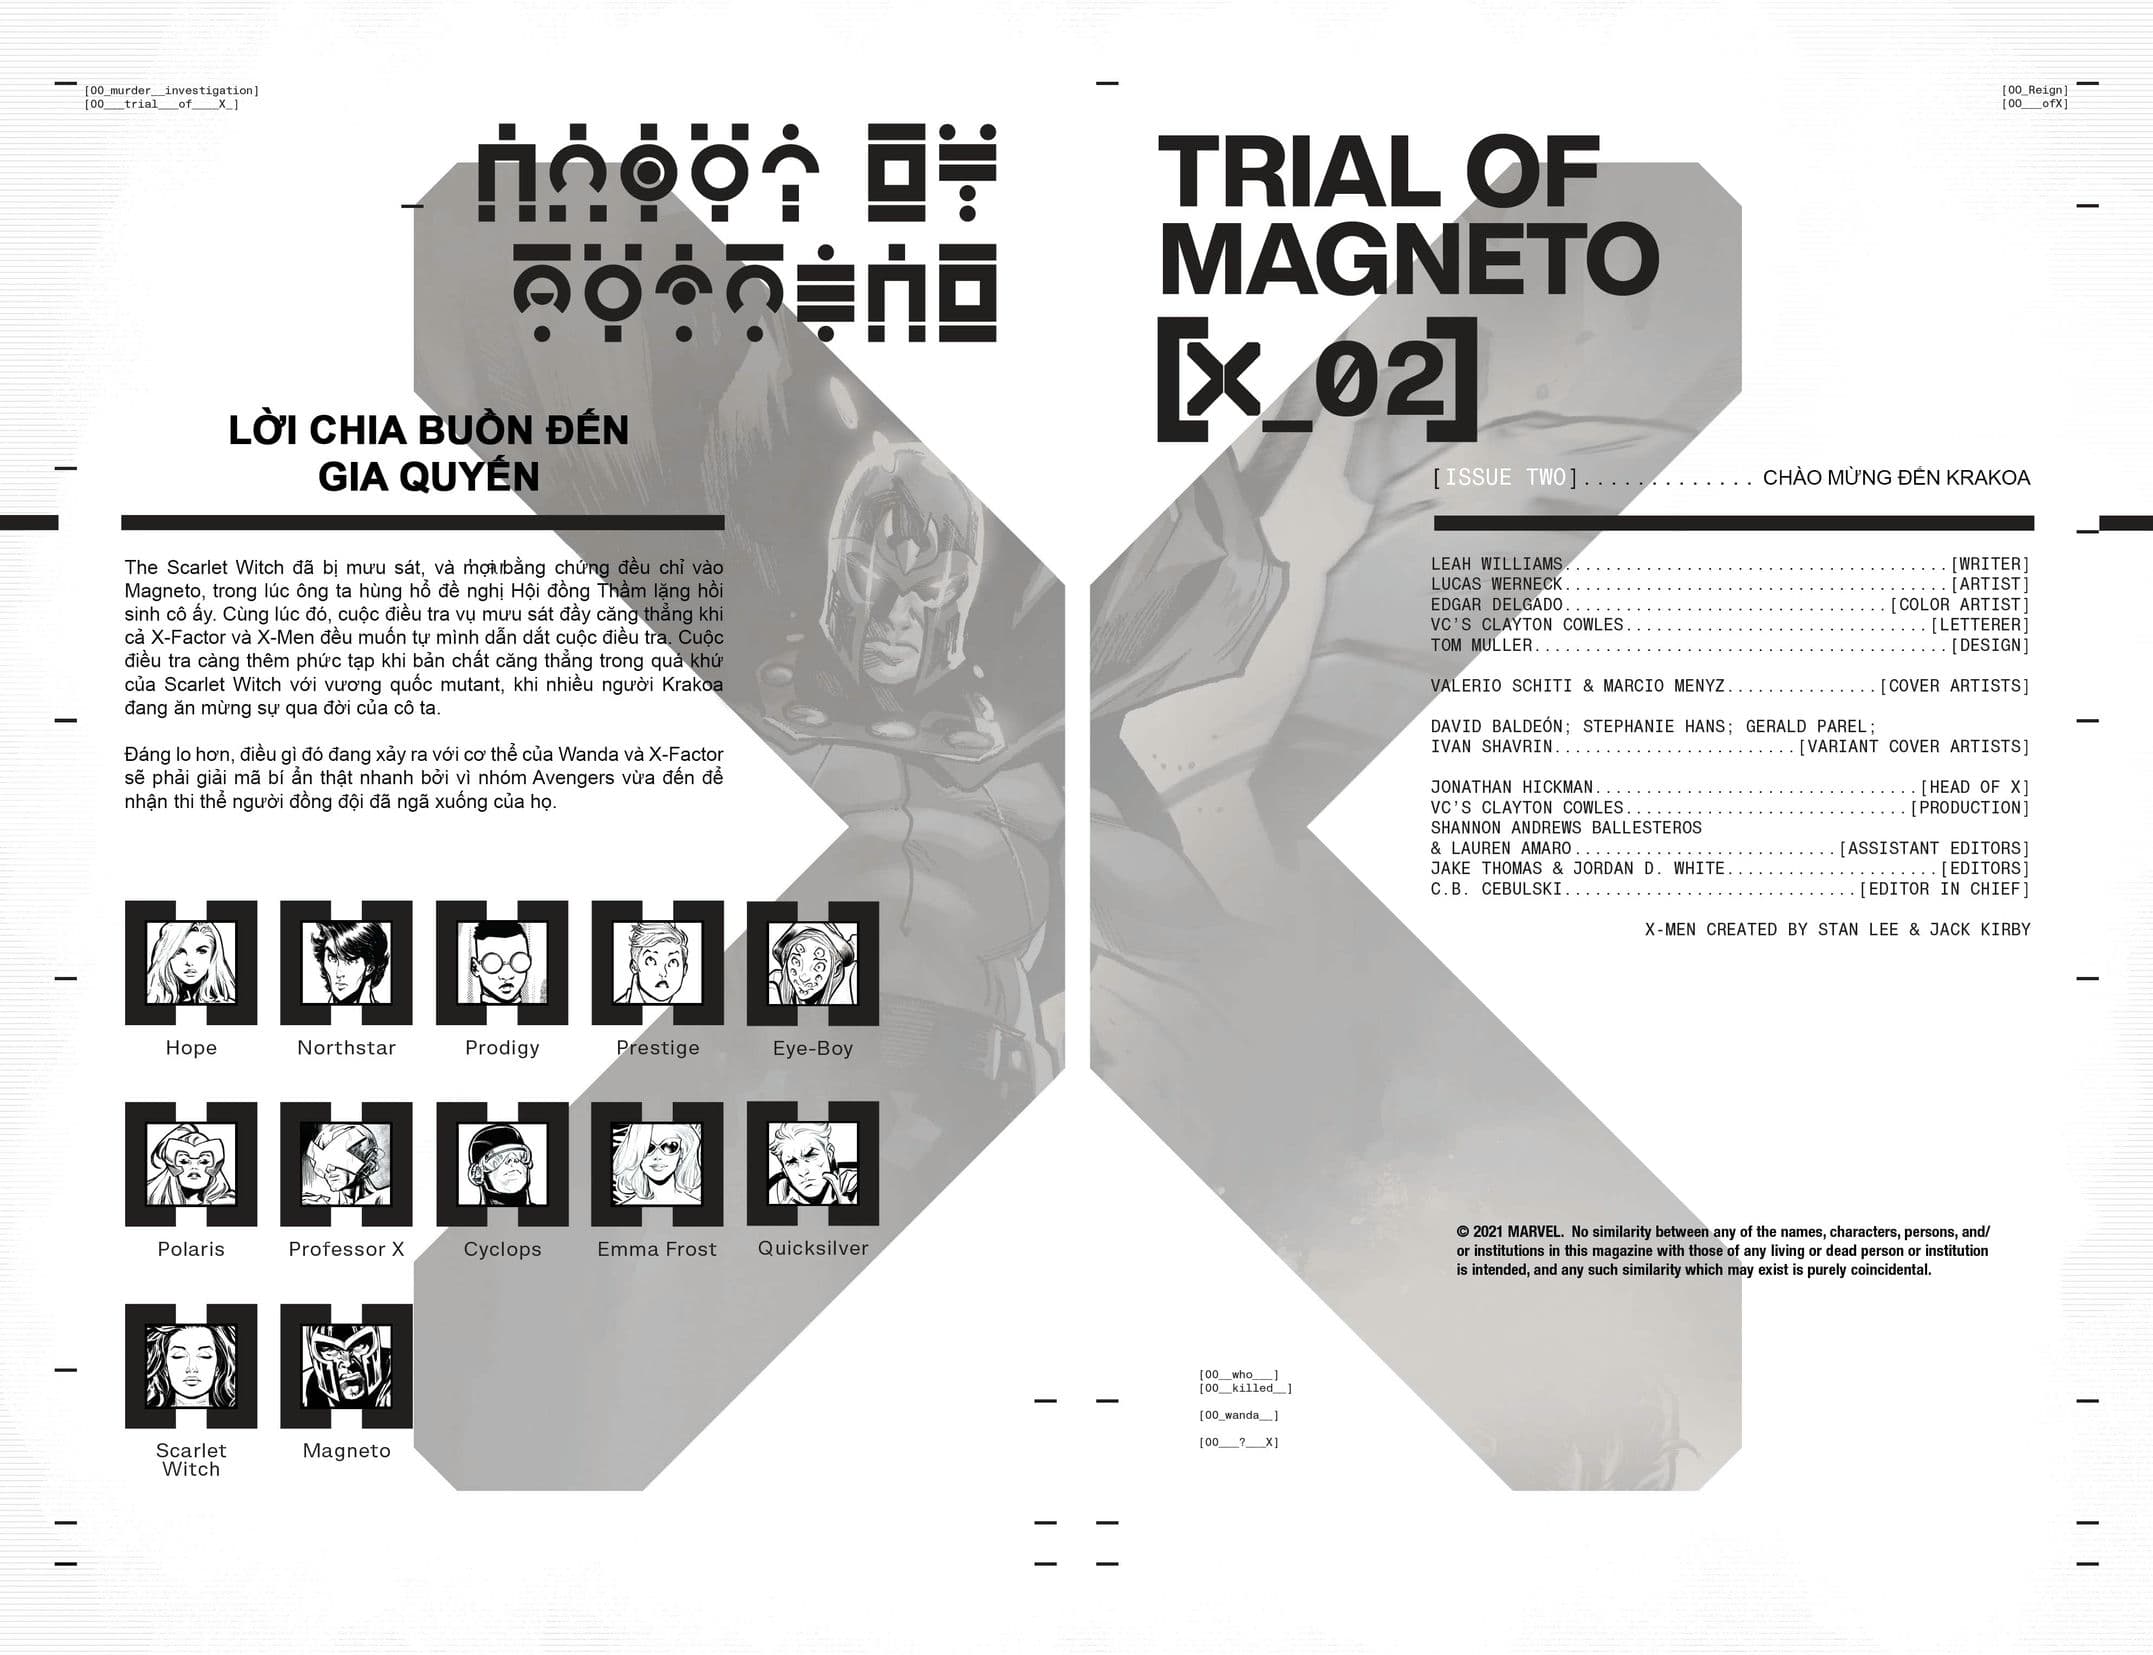 https://langgeek.net/wp-content/webpc-passthru.php?src=https://langgeek.net/wp-content/uploads/2022/03/X-Men-The-Trial-Of-Magneto-2021-02-of-05-006.jpg&nocache=1